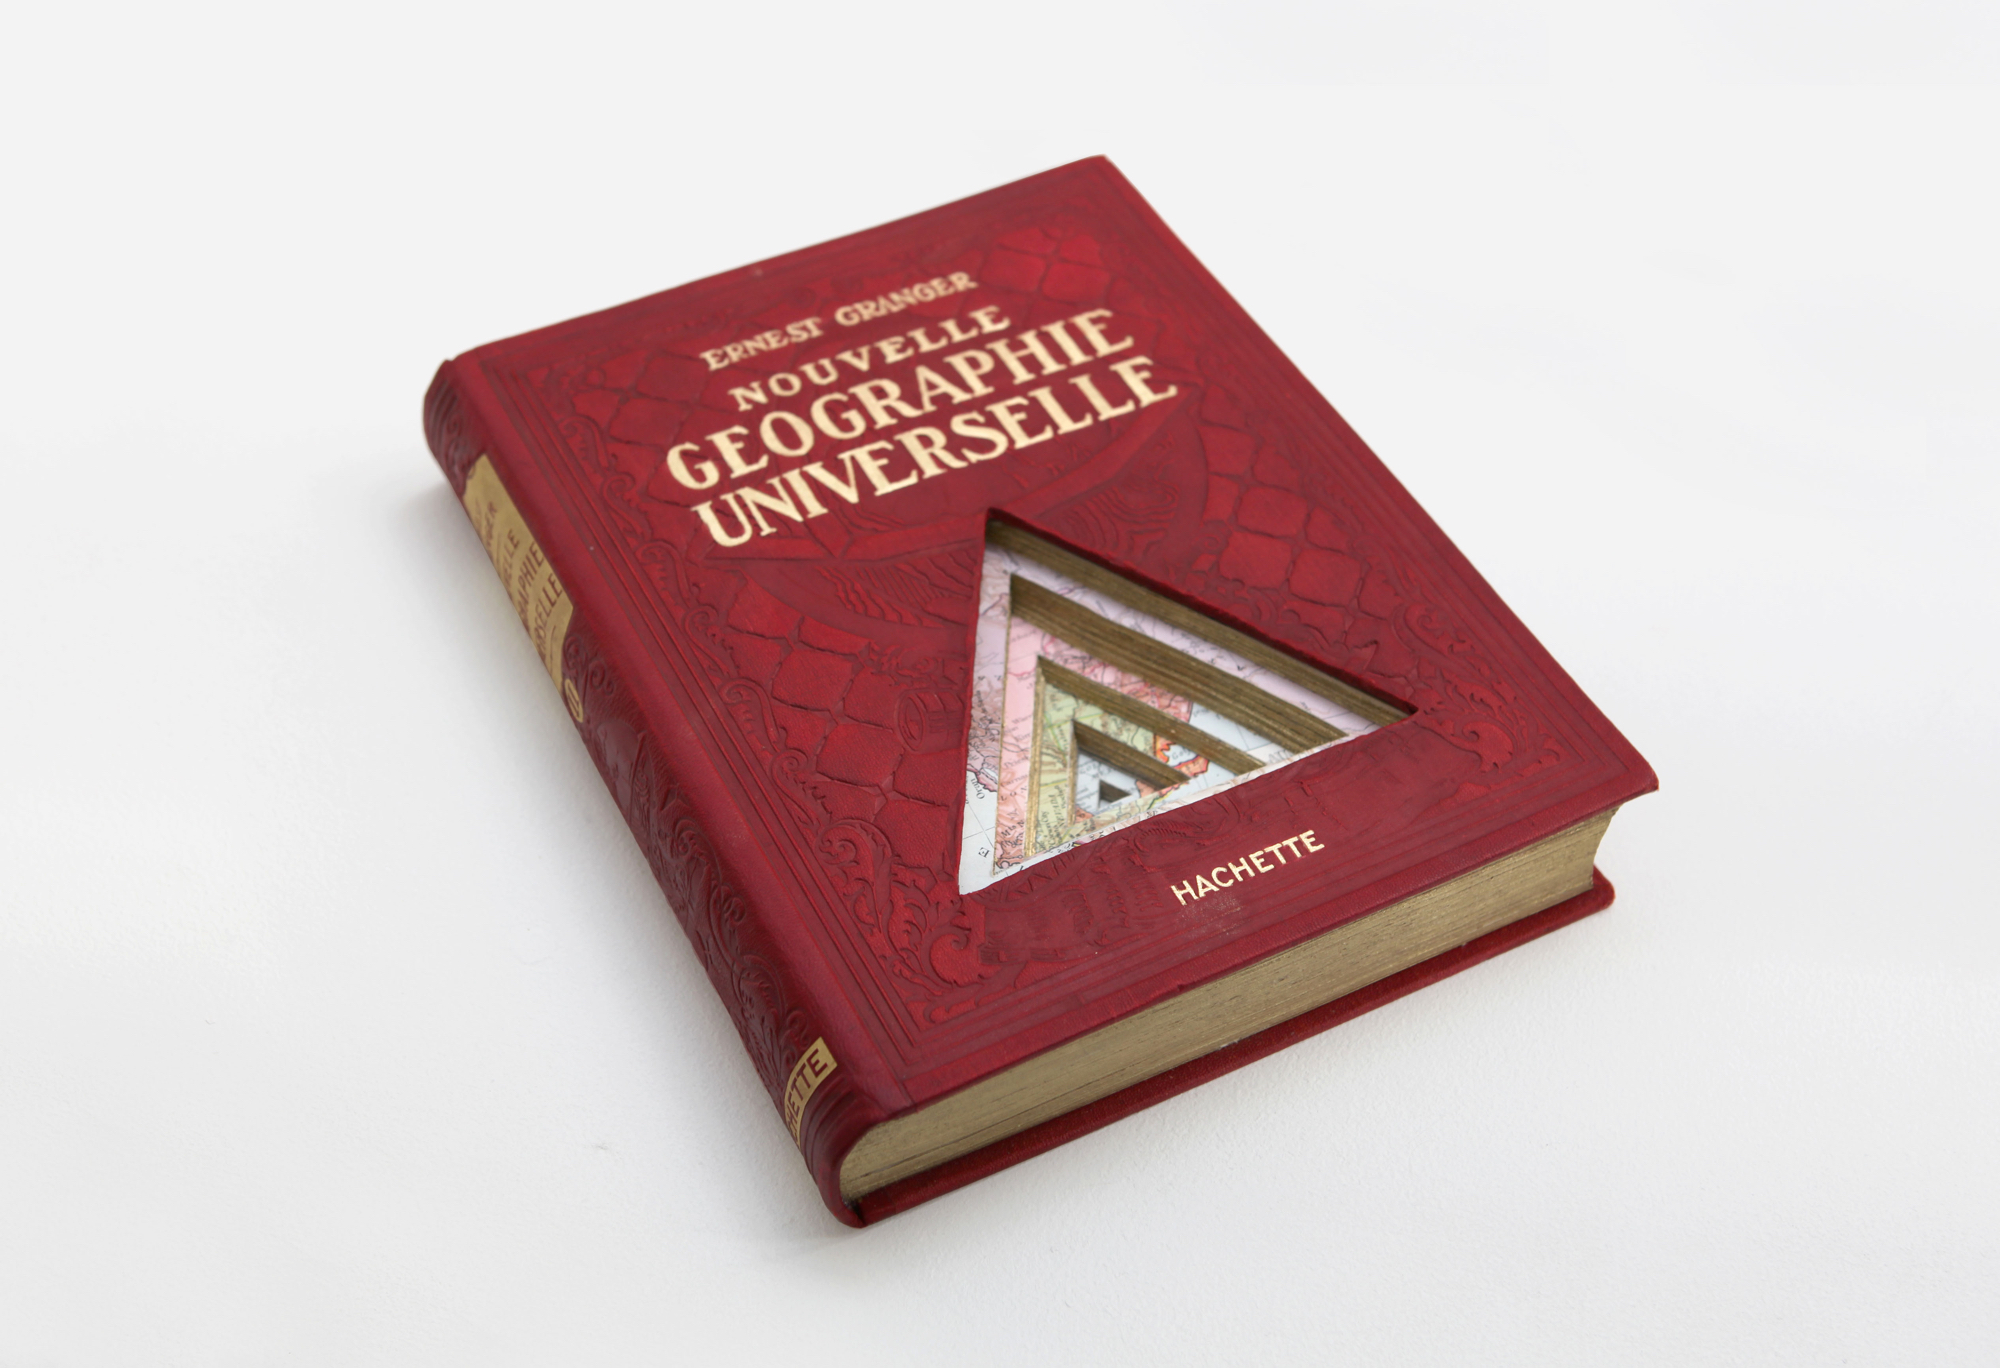 NOUVELLE GEOGRAPHIE UNIVERSELLE, 2015
découpes sur livre de géographie – 25 x 30 cm
